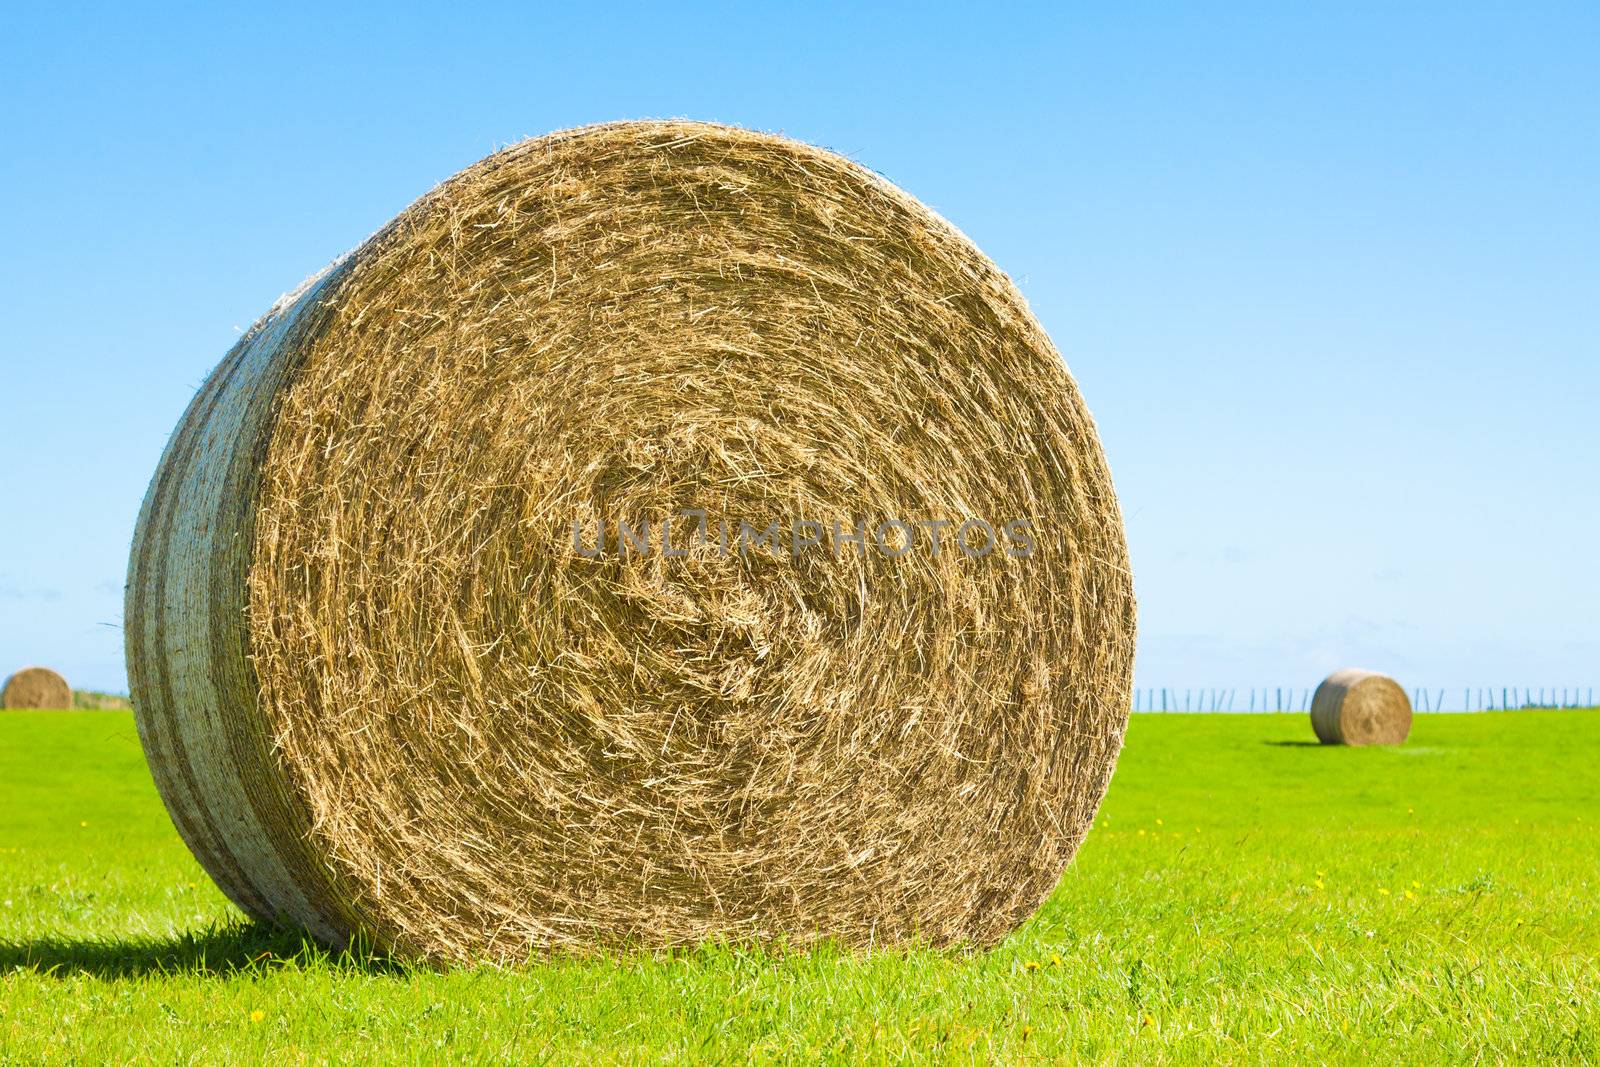 Big hay bale roll in a green field by Jaykayl